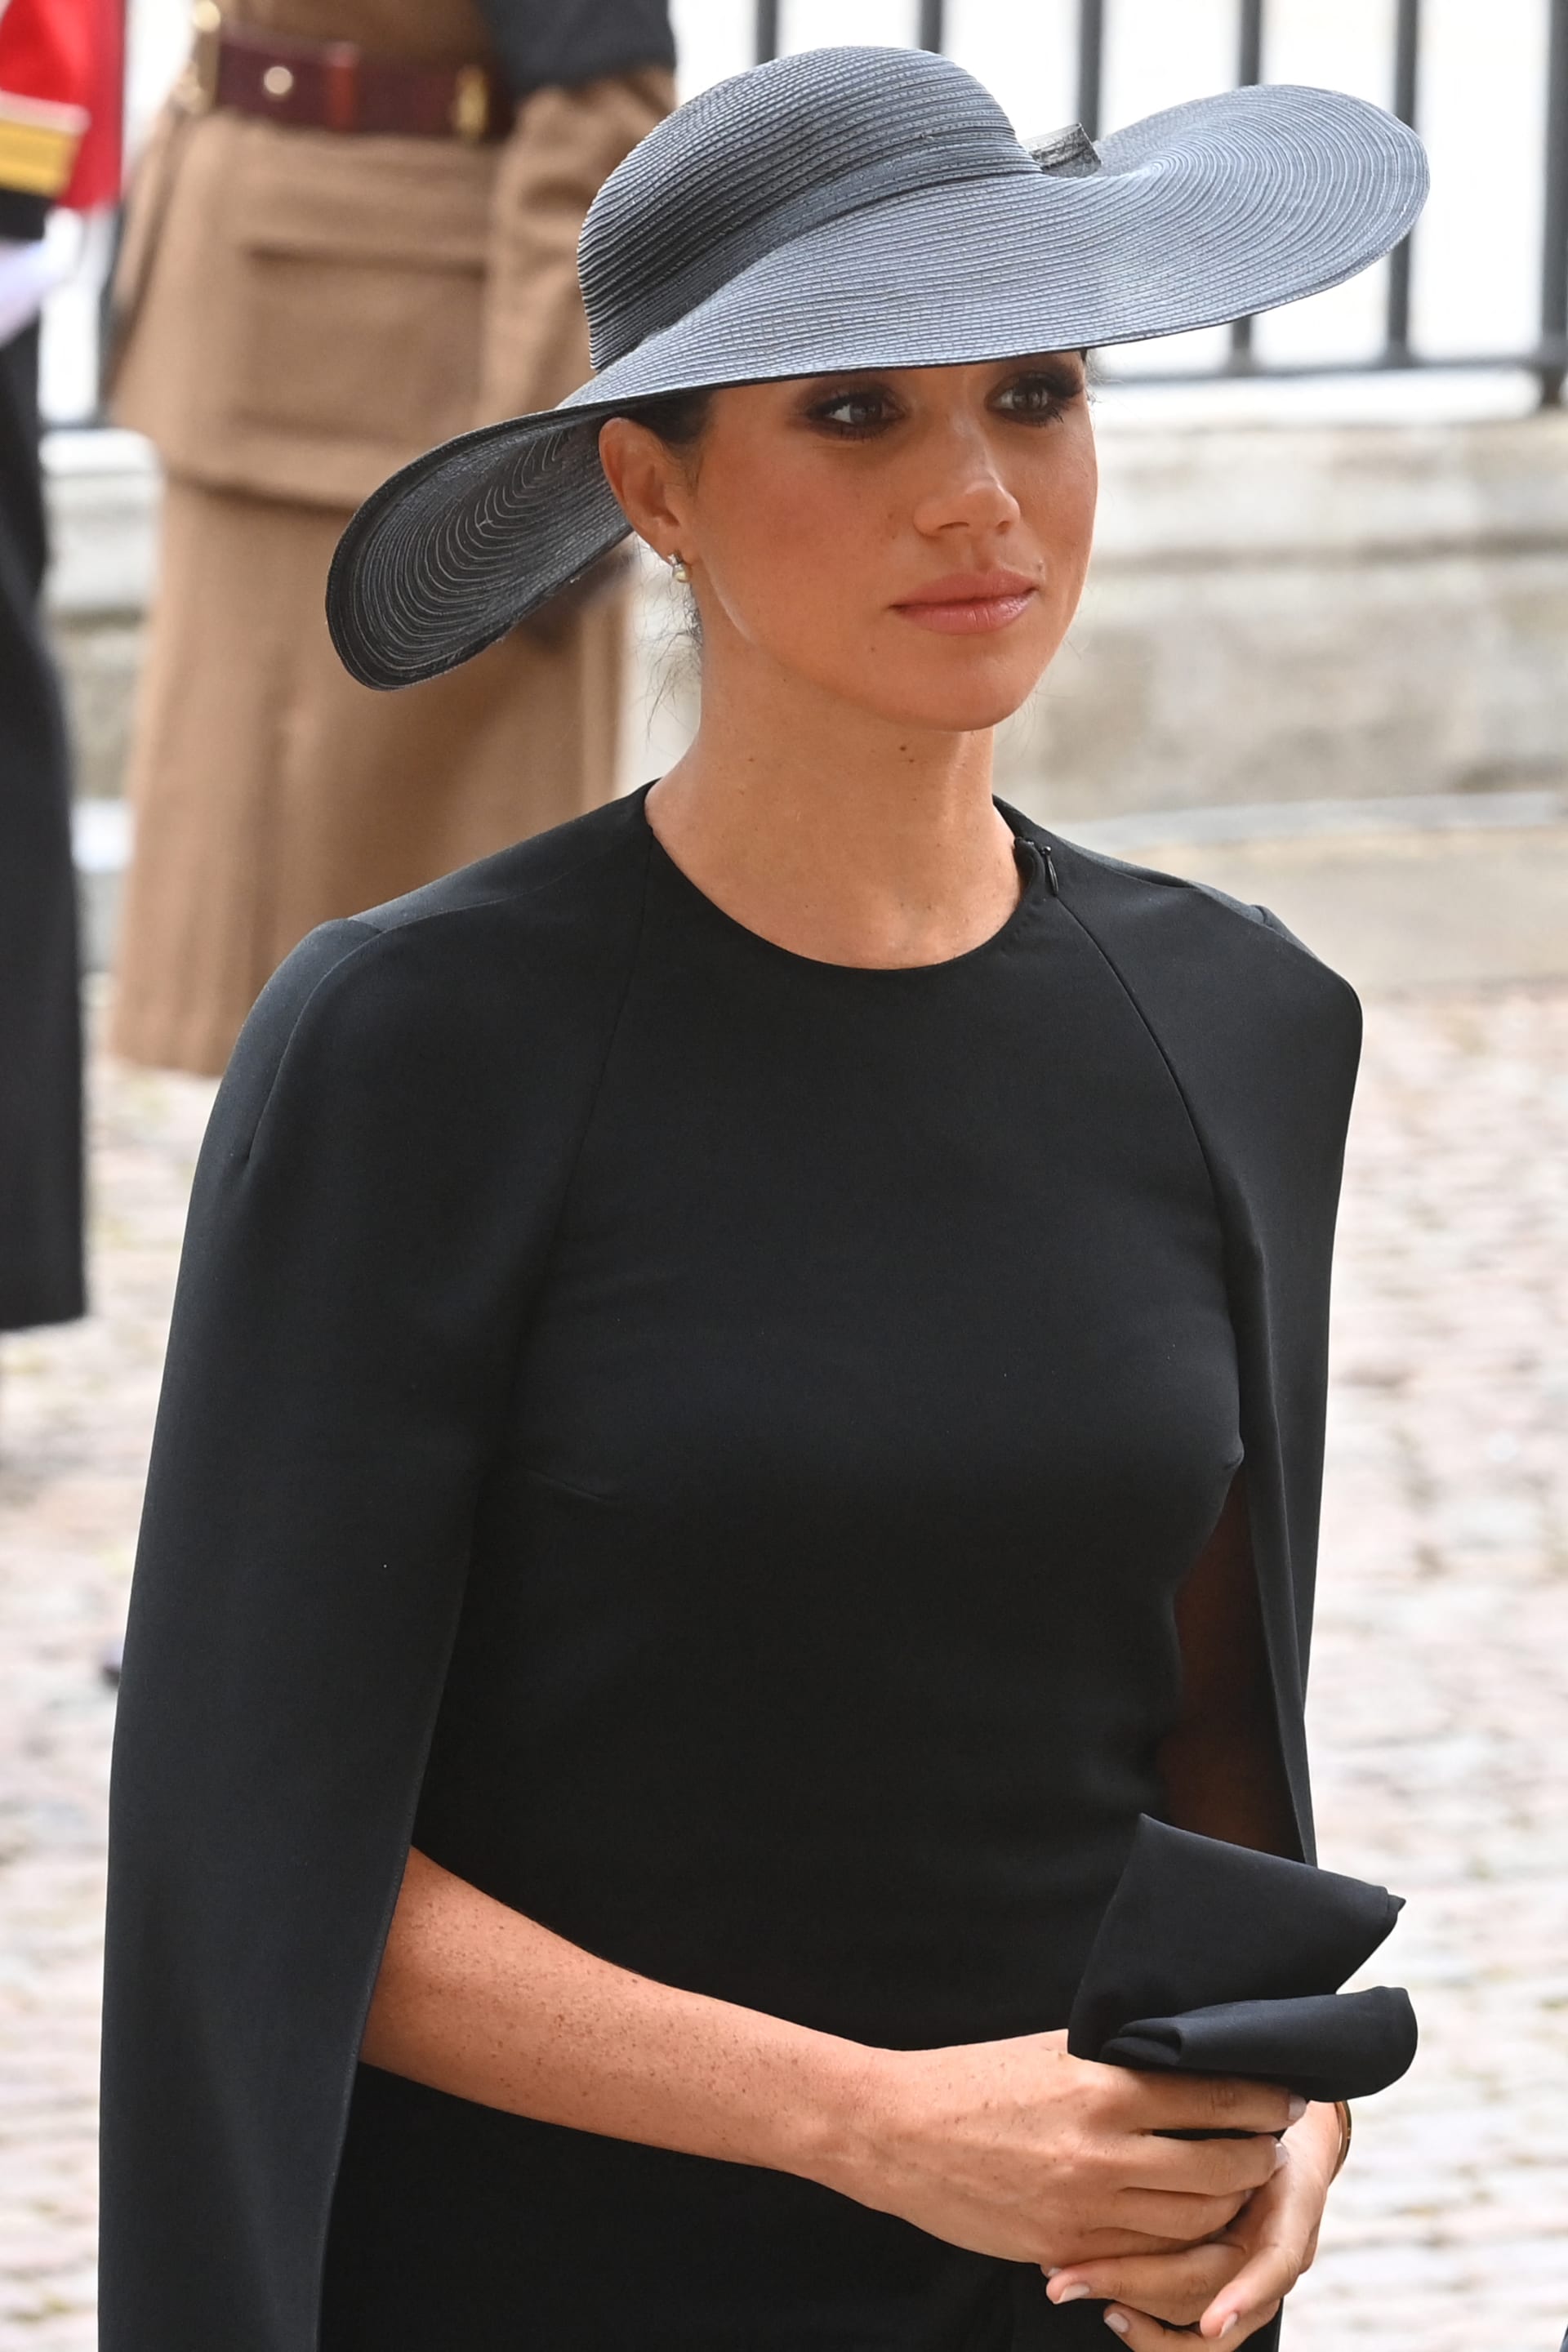 Siyah şapkalardan takılara.. Kraliçe Elizabeth'in cenazesinin konukları ne giydi?